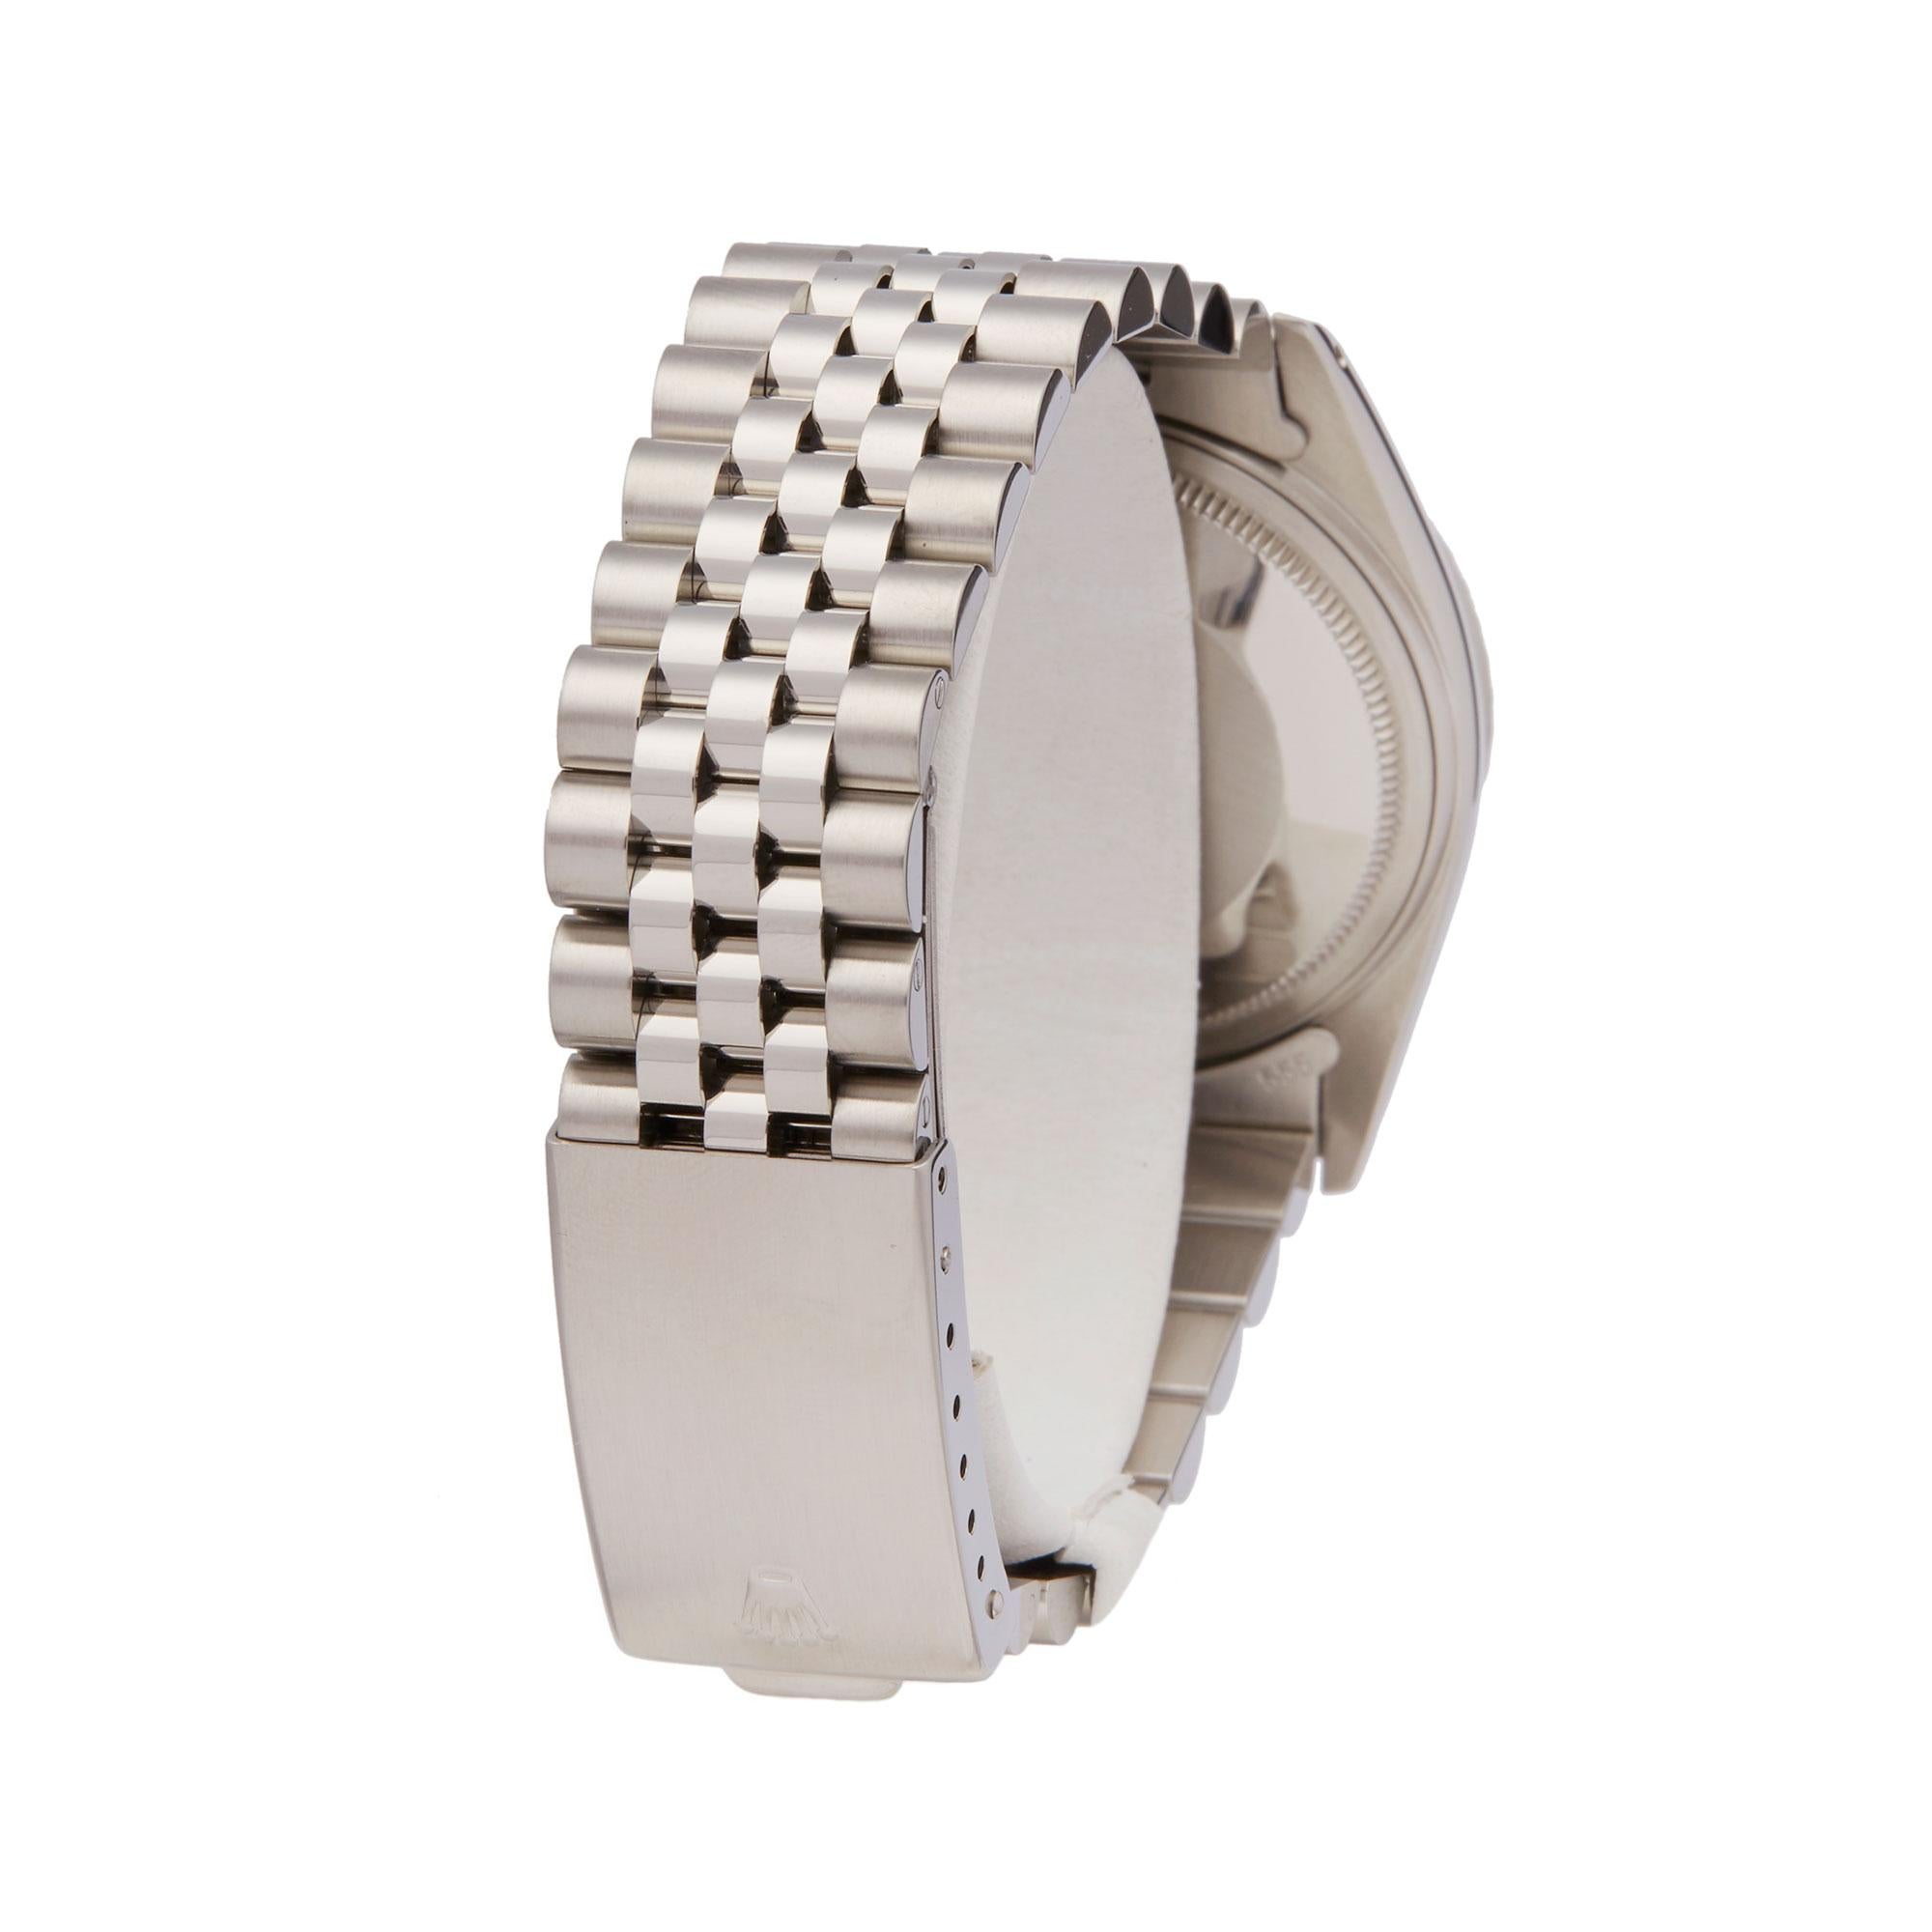 Men's Rolex Datejust 36 Stainless Steel 16030 Wristwatch